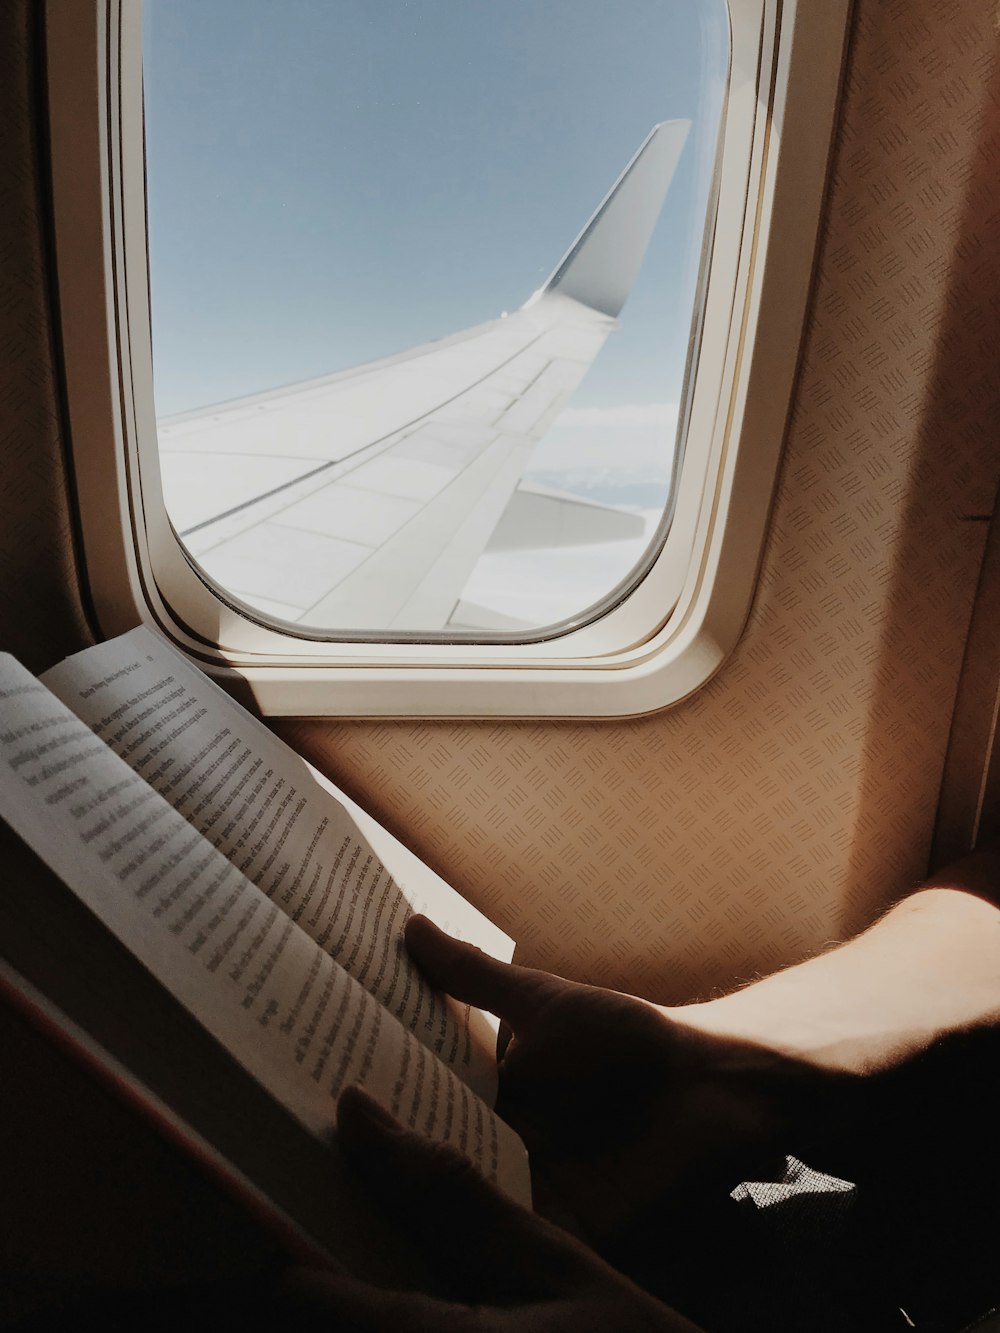 飛行機の窓のそばで本を読んでいる人